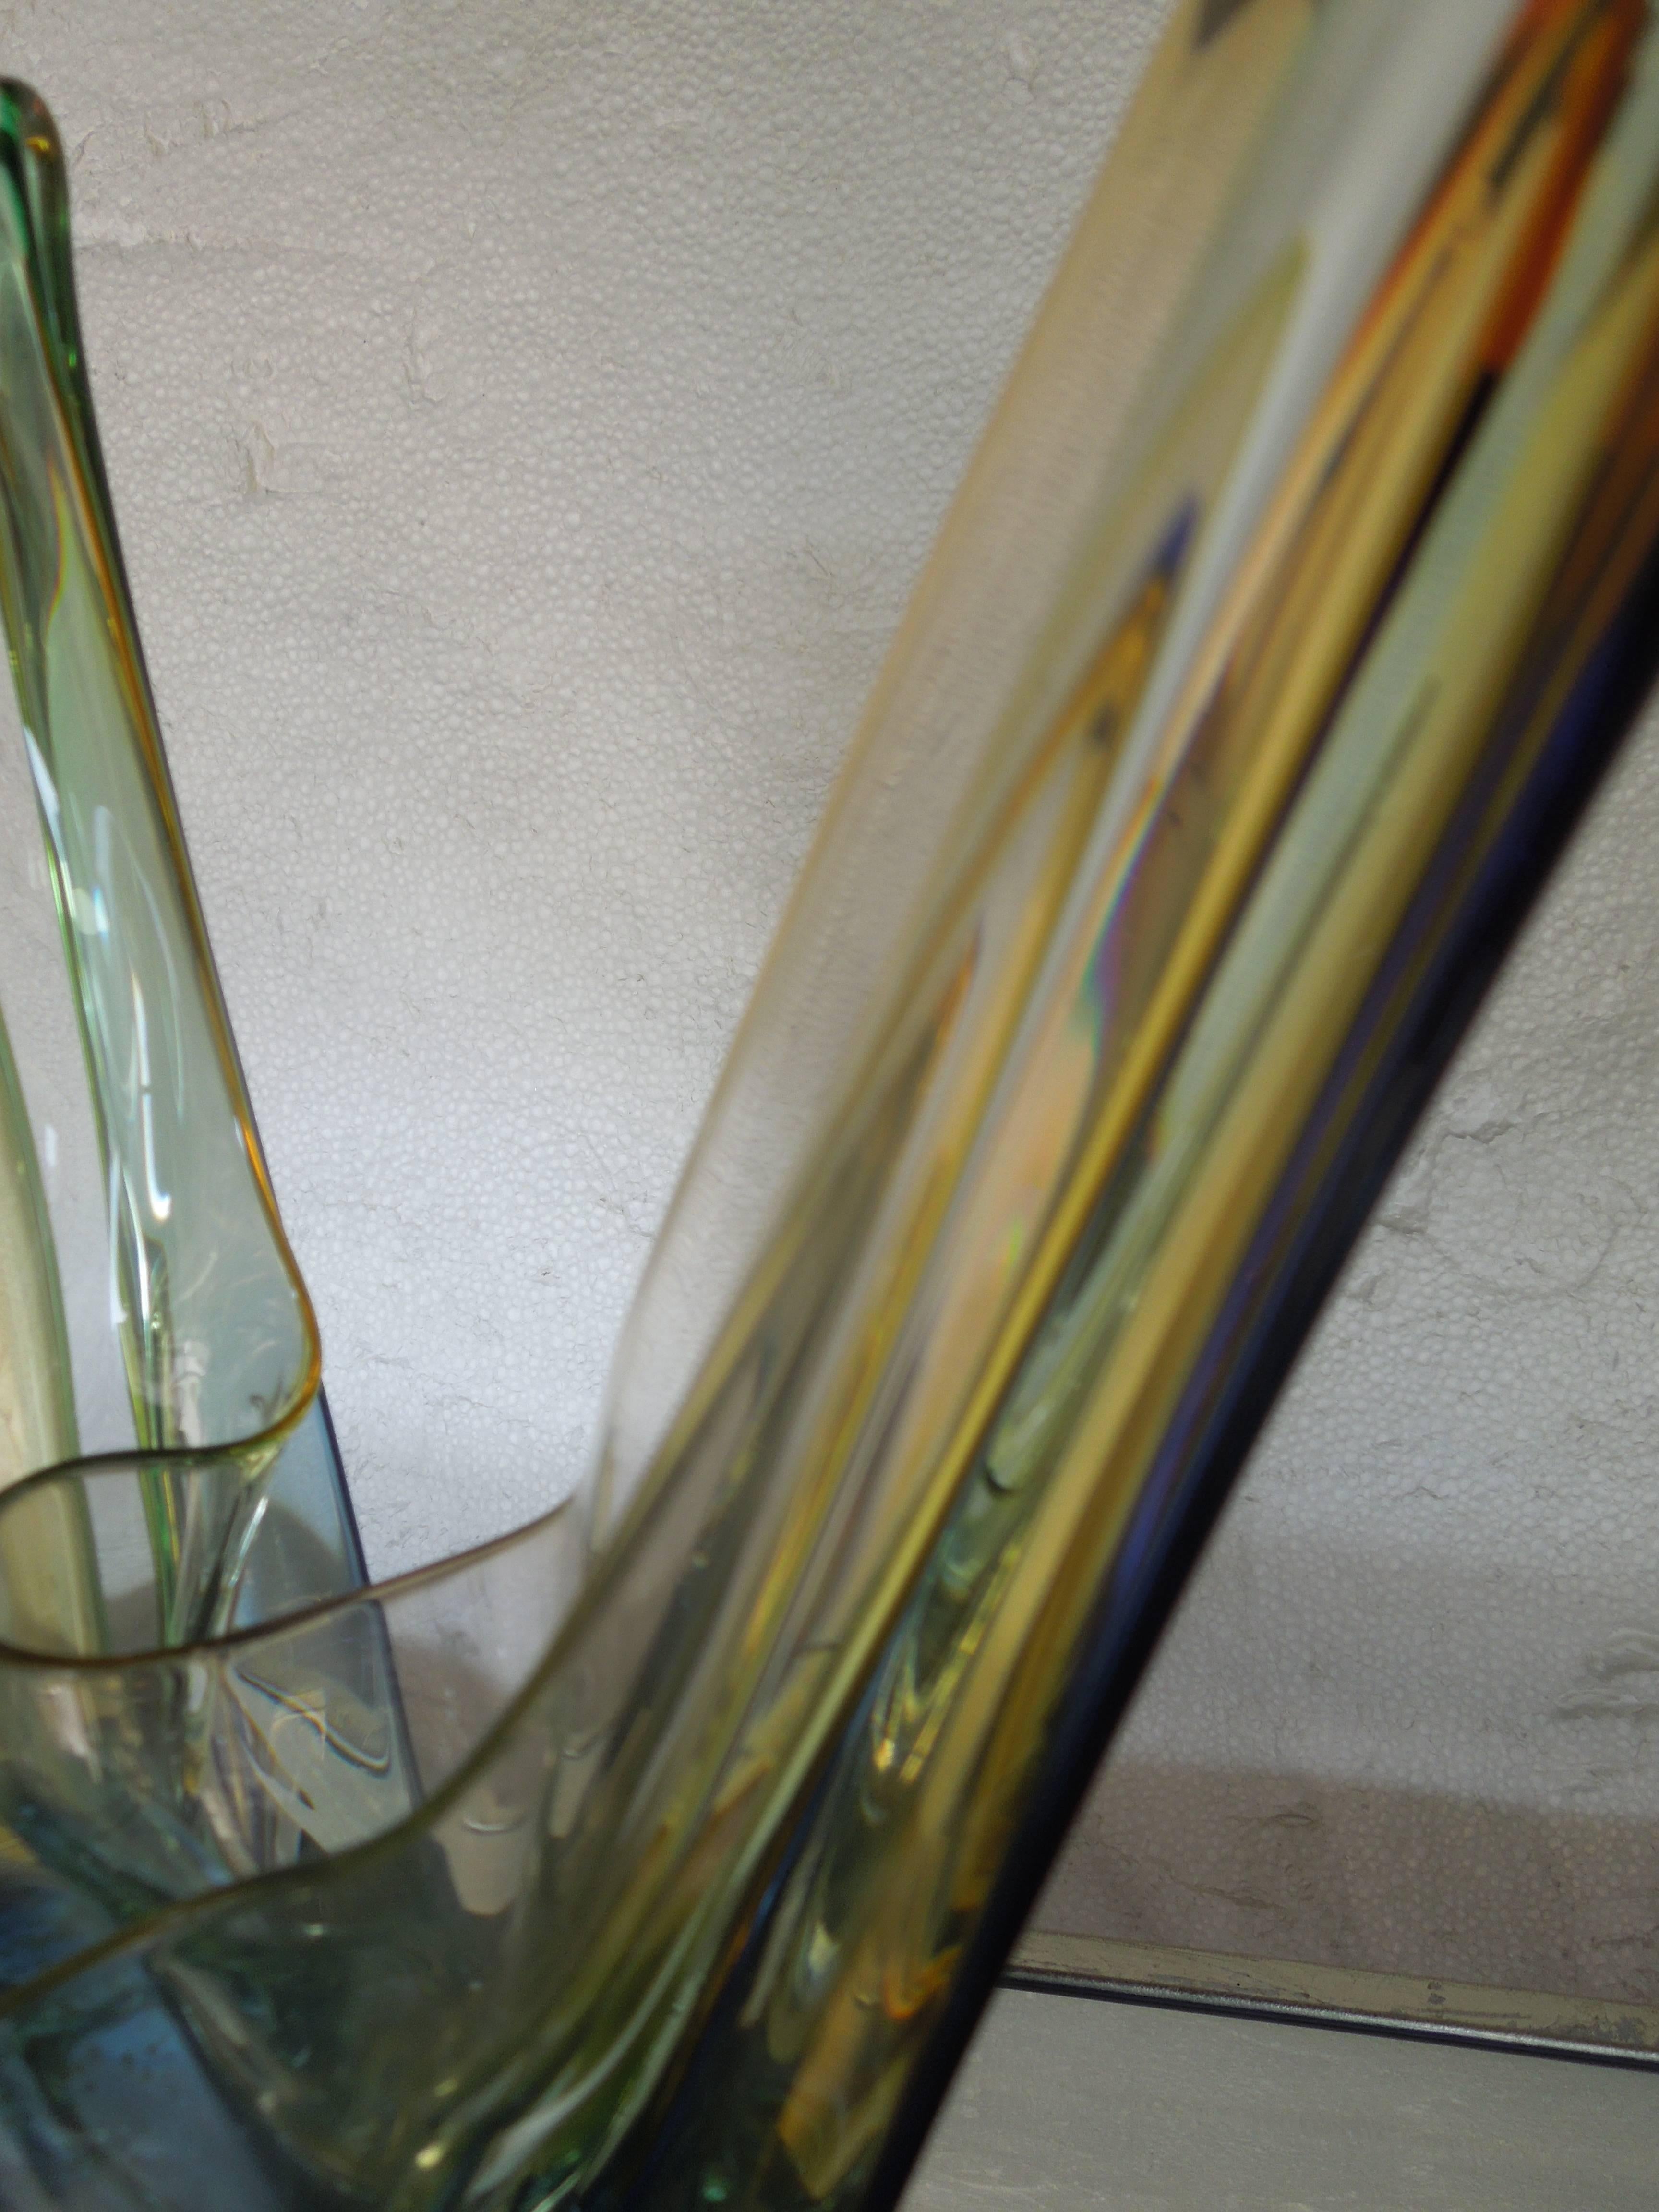 Other Modern Art Signed Jablanski Poland Crystal Glass Sculpture For Sale